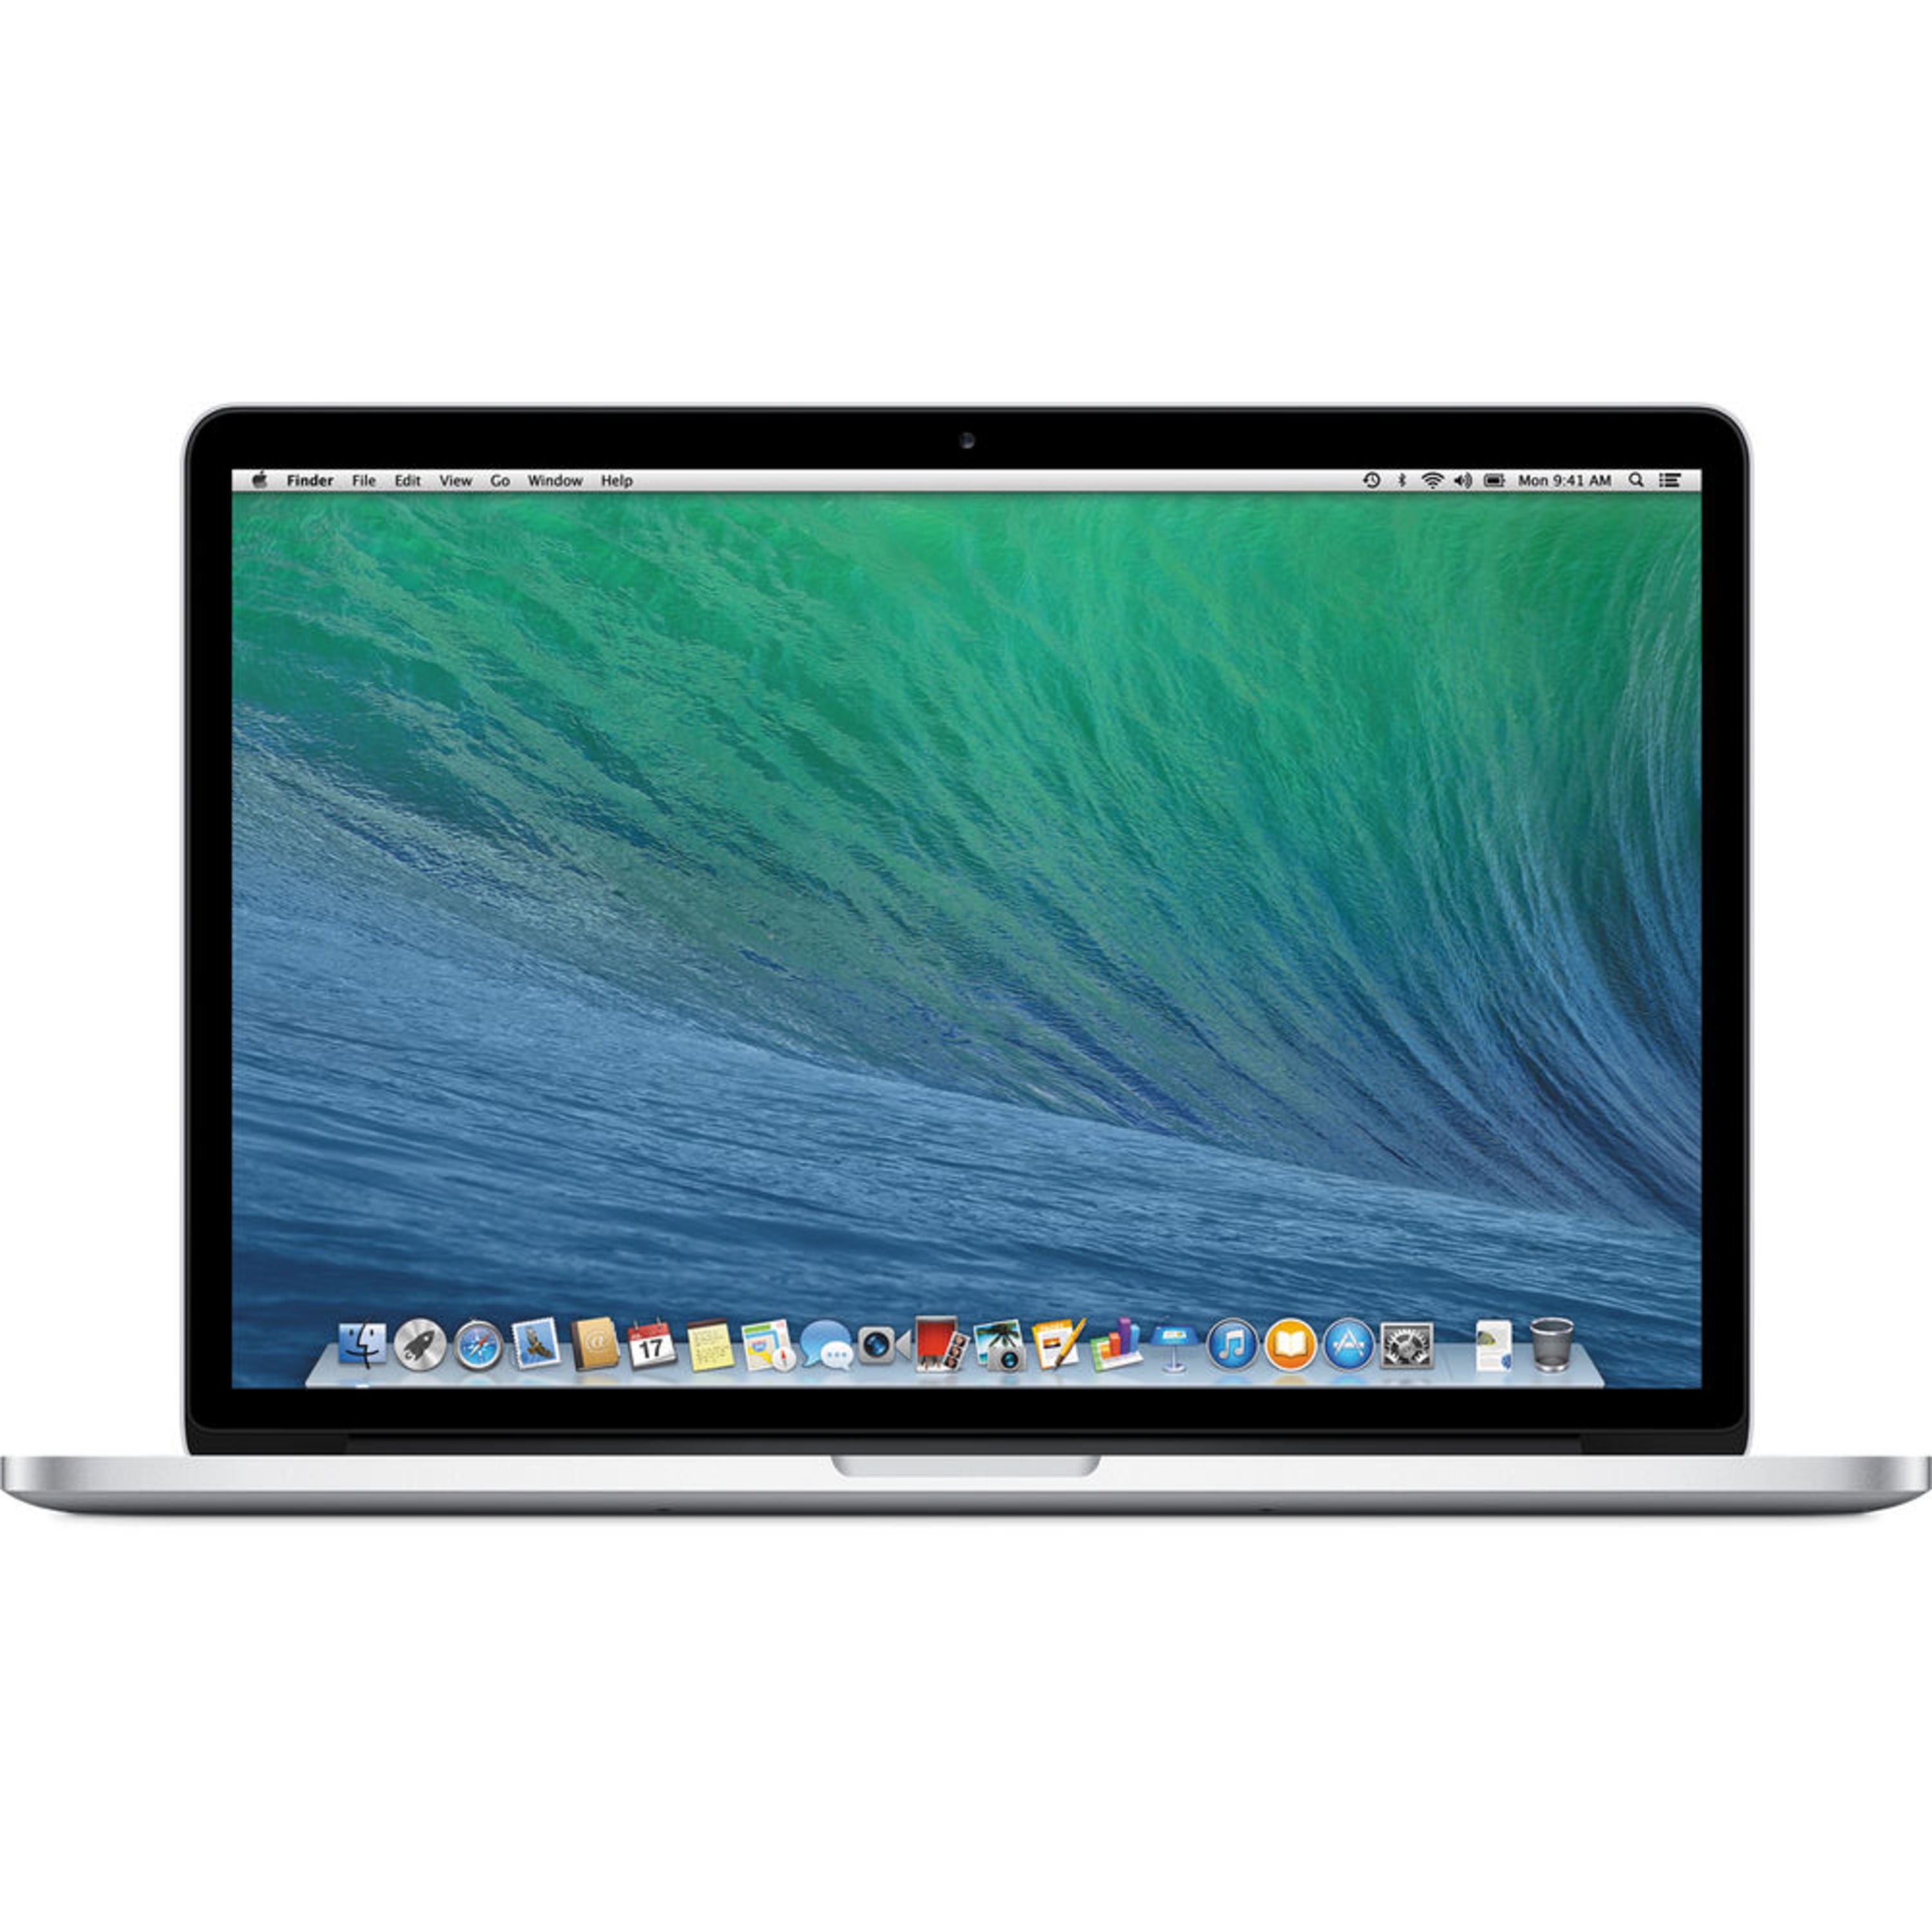 MacBook Pro Laptop, 15.4", Intel Core i7-4750HQ, 8GB RAM,256GB SSD, Mac OS X, ME293LL/A (Certified Refurbished) - Walmart.com